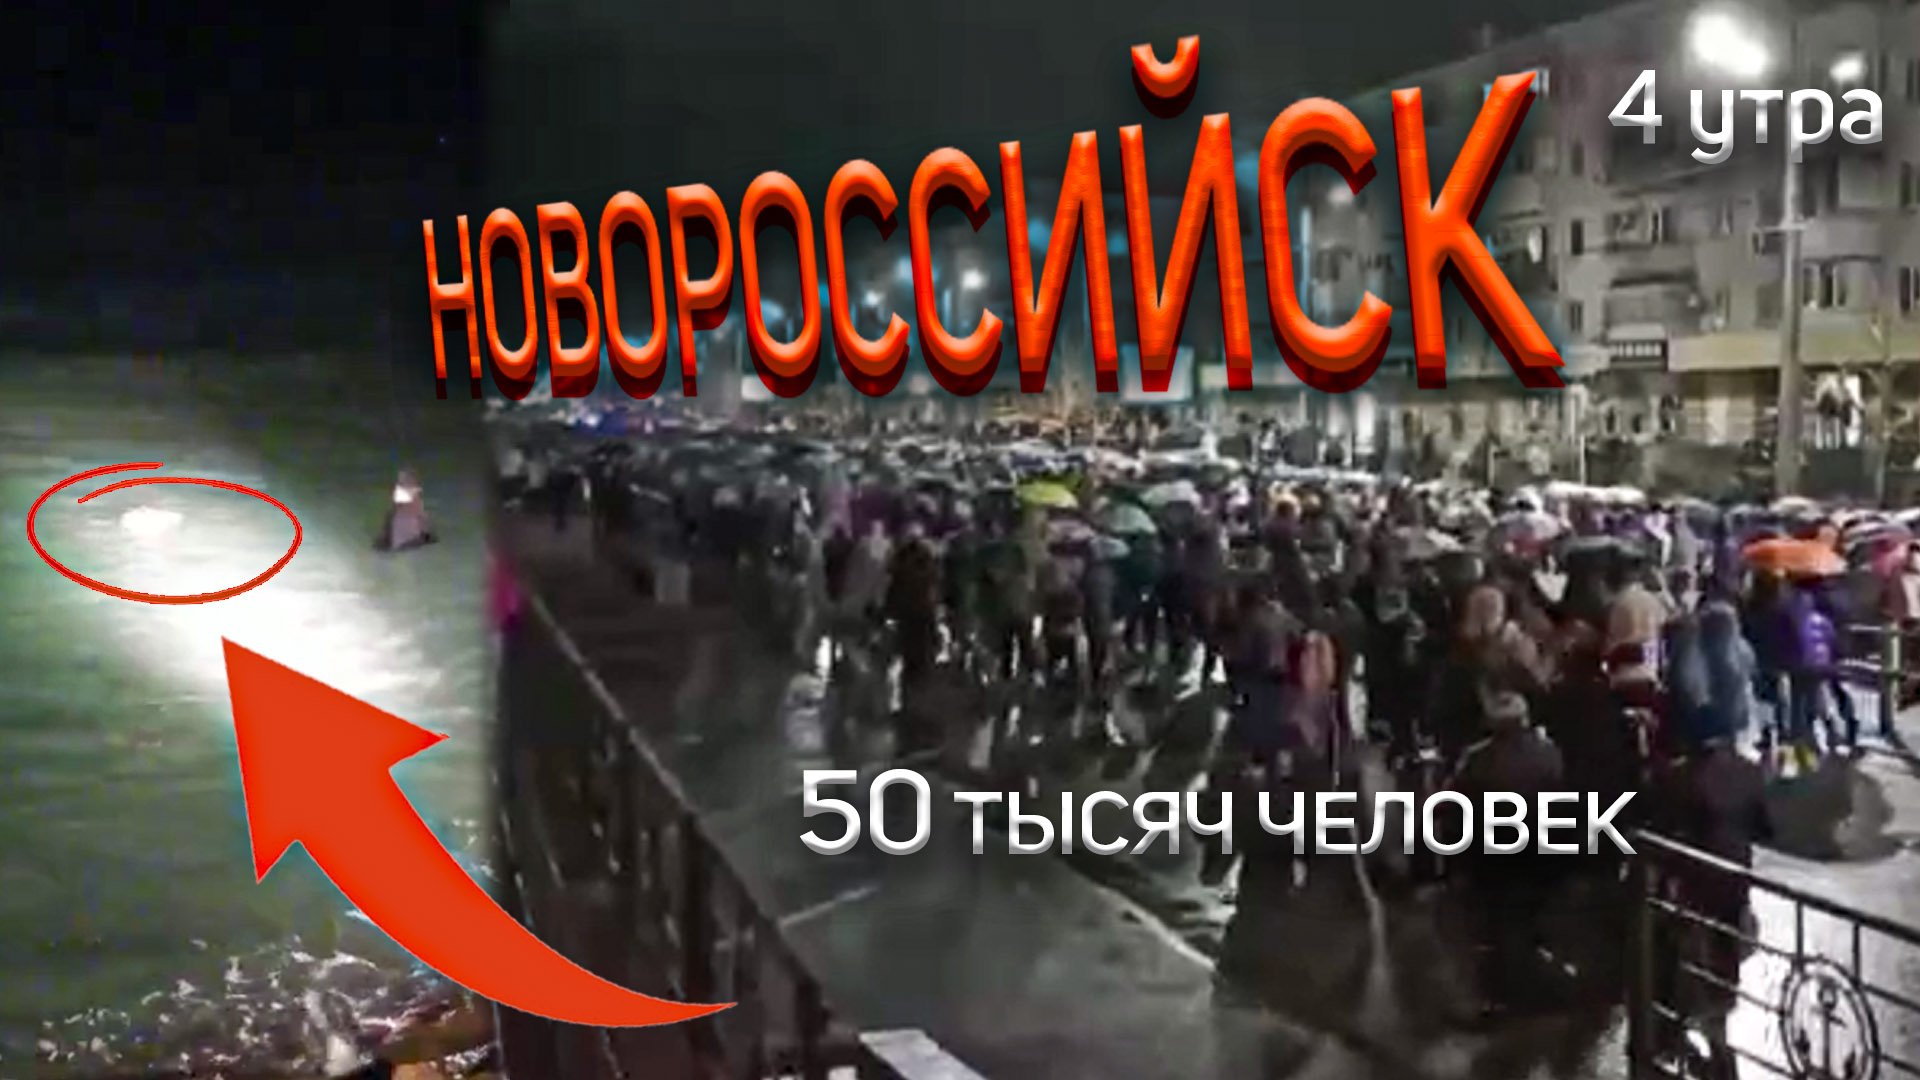 4 часа утра 50 тысяч человек Новороссийск 4 февраля 2023 года. Бескозырка. Мы непобедимый народ